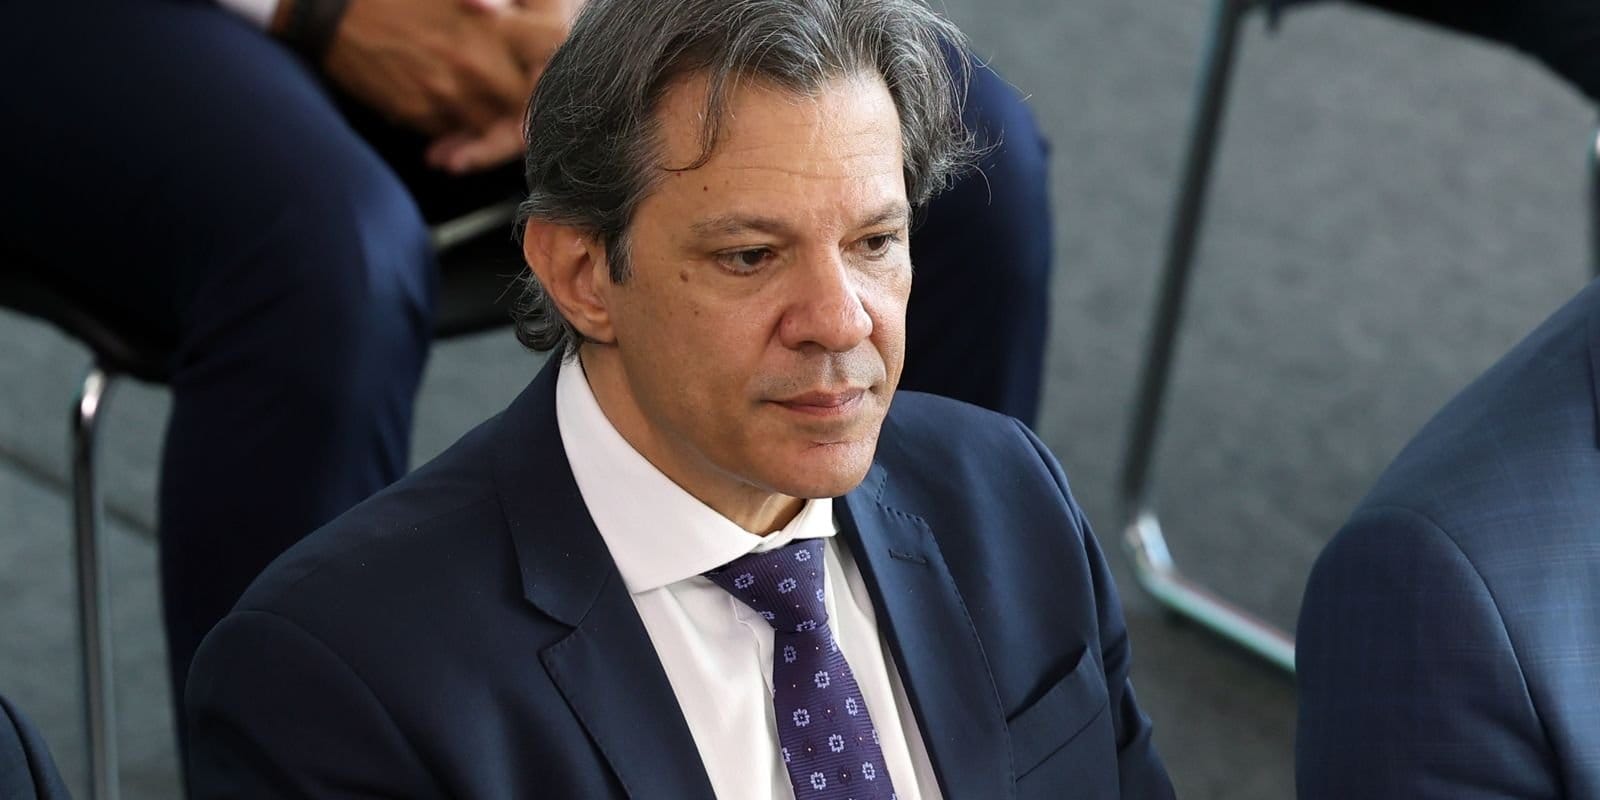 Haddad anuncia R$ 25,9 bilhões em cortes de despesas obrigatórias